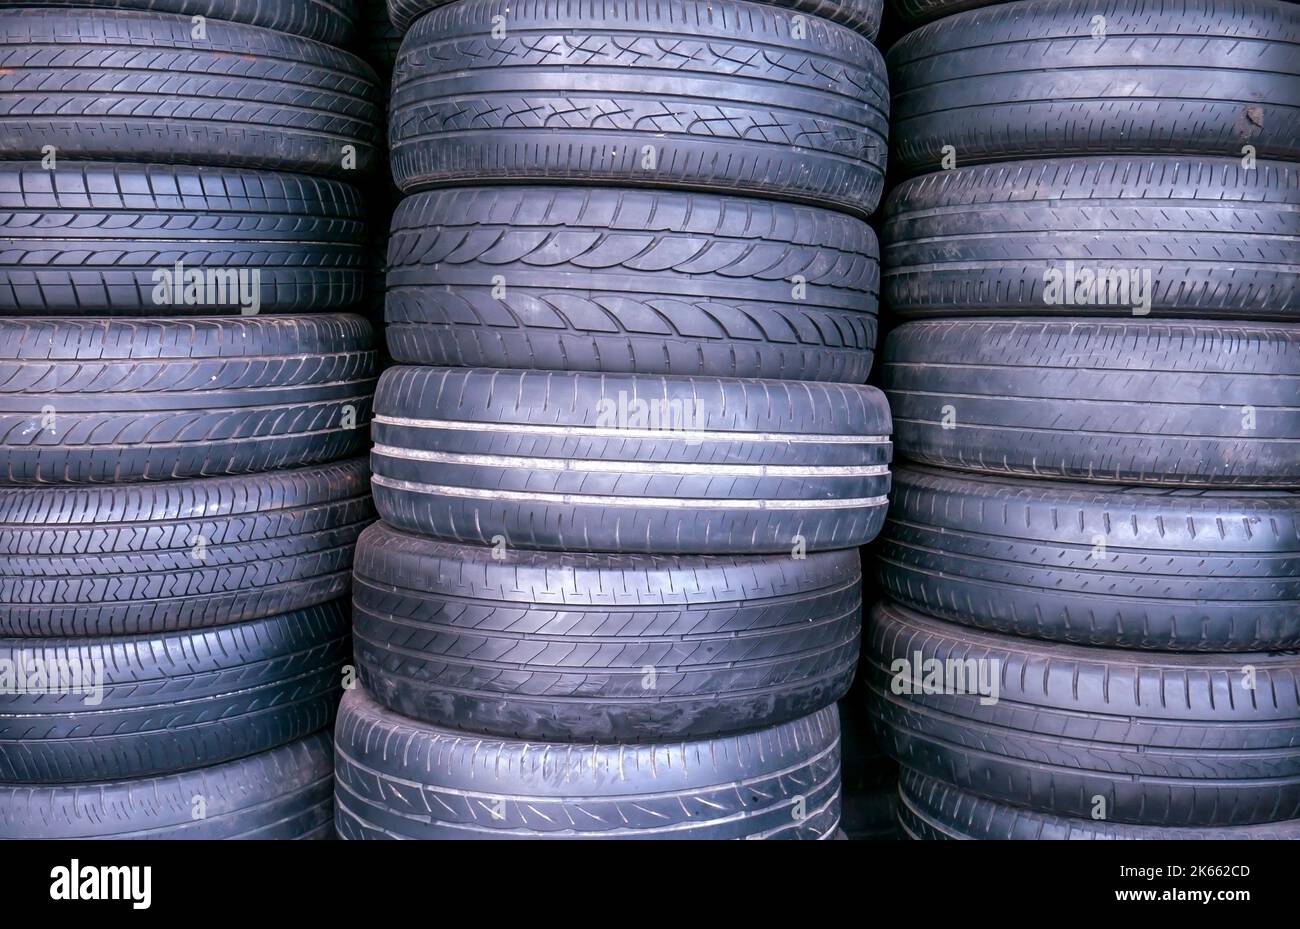 Les pneus de voiture d'occasion et d'ancienne taille s'empilent dans l'atelier de réparation des pneus Banque D'Images